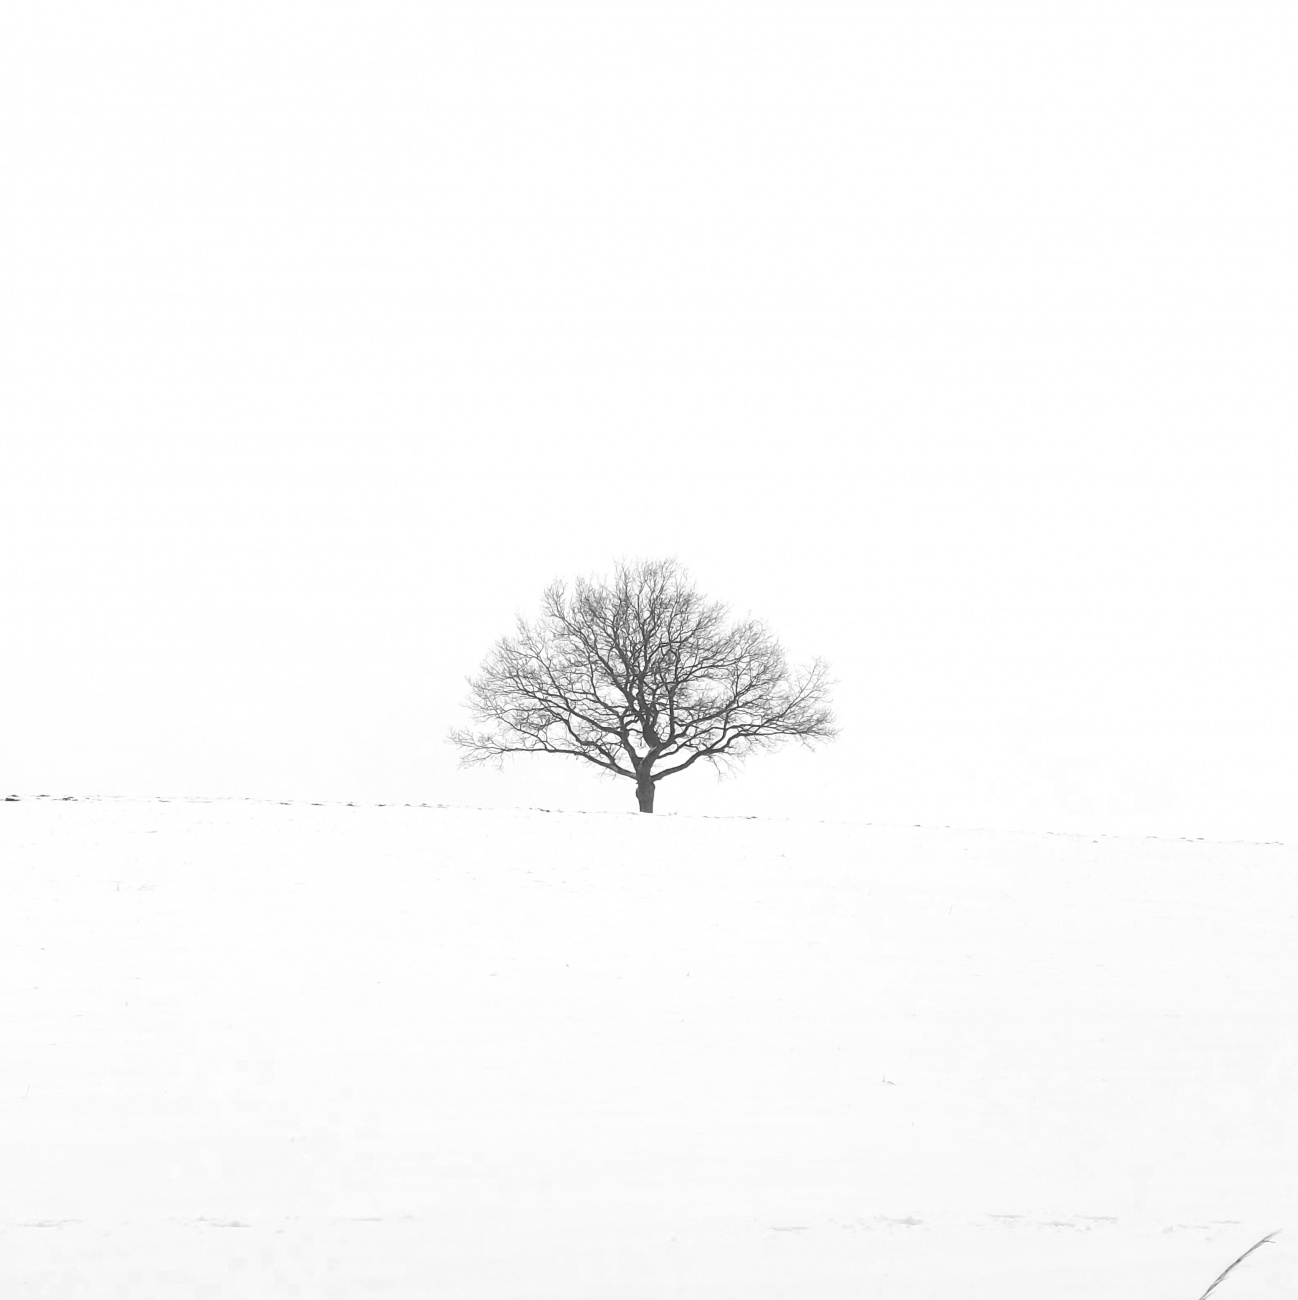 Foto: Martin Zehrer - Baum im Schneemeer - zwischen Bingarten und Tiefenbach 